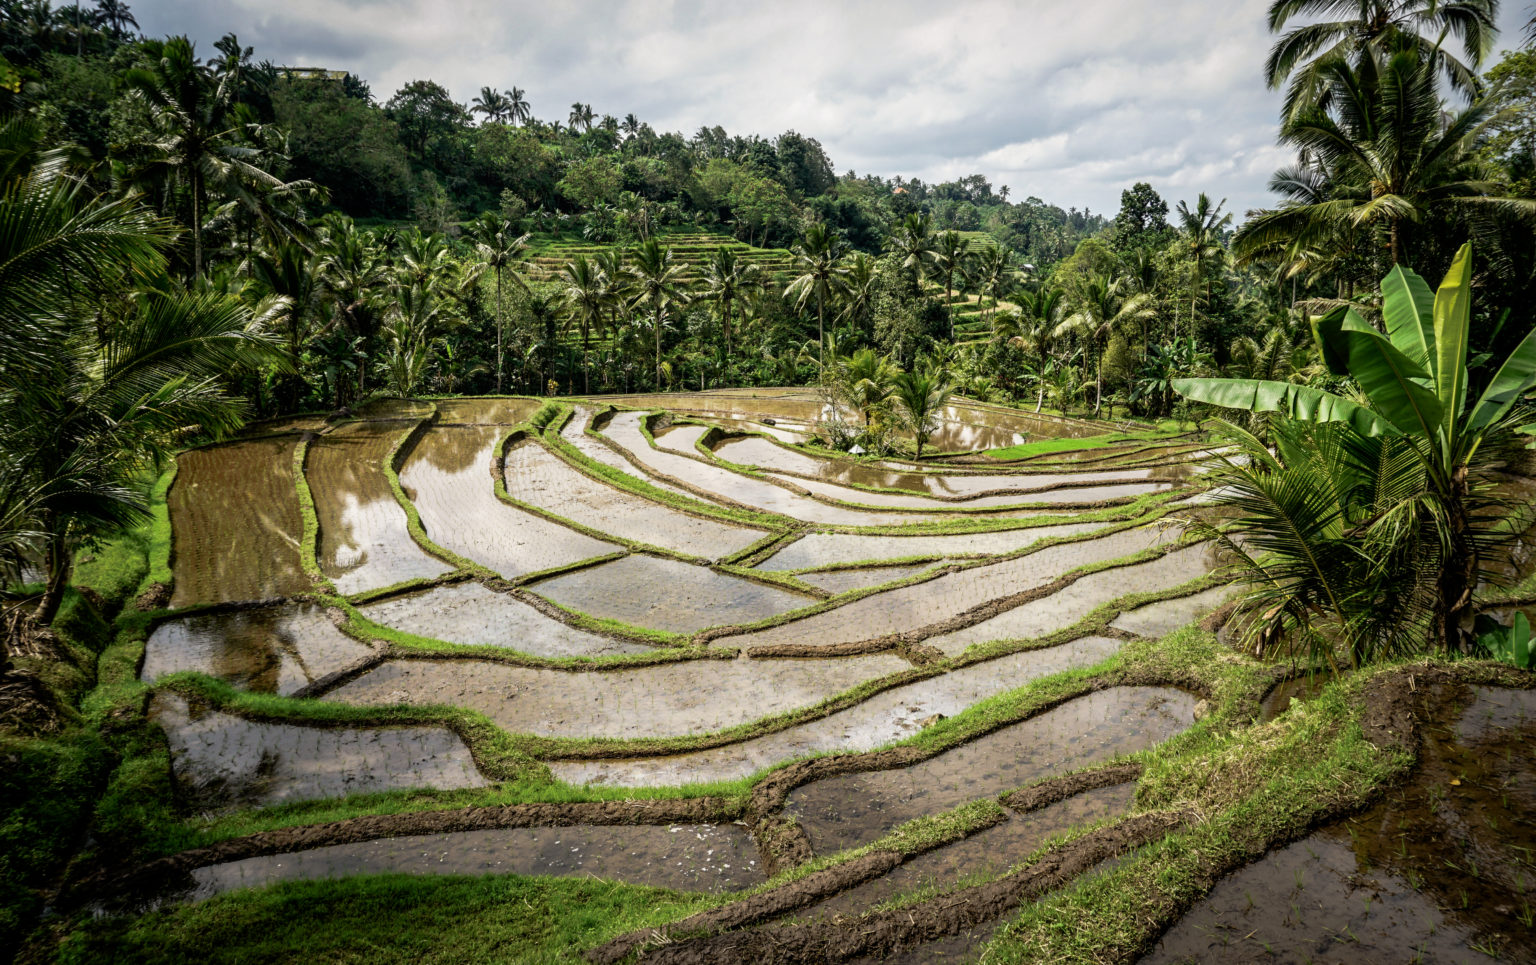 riziere indonesie bali